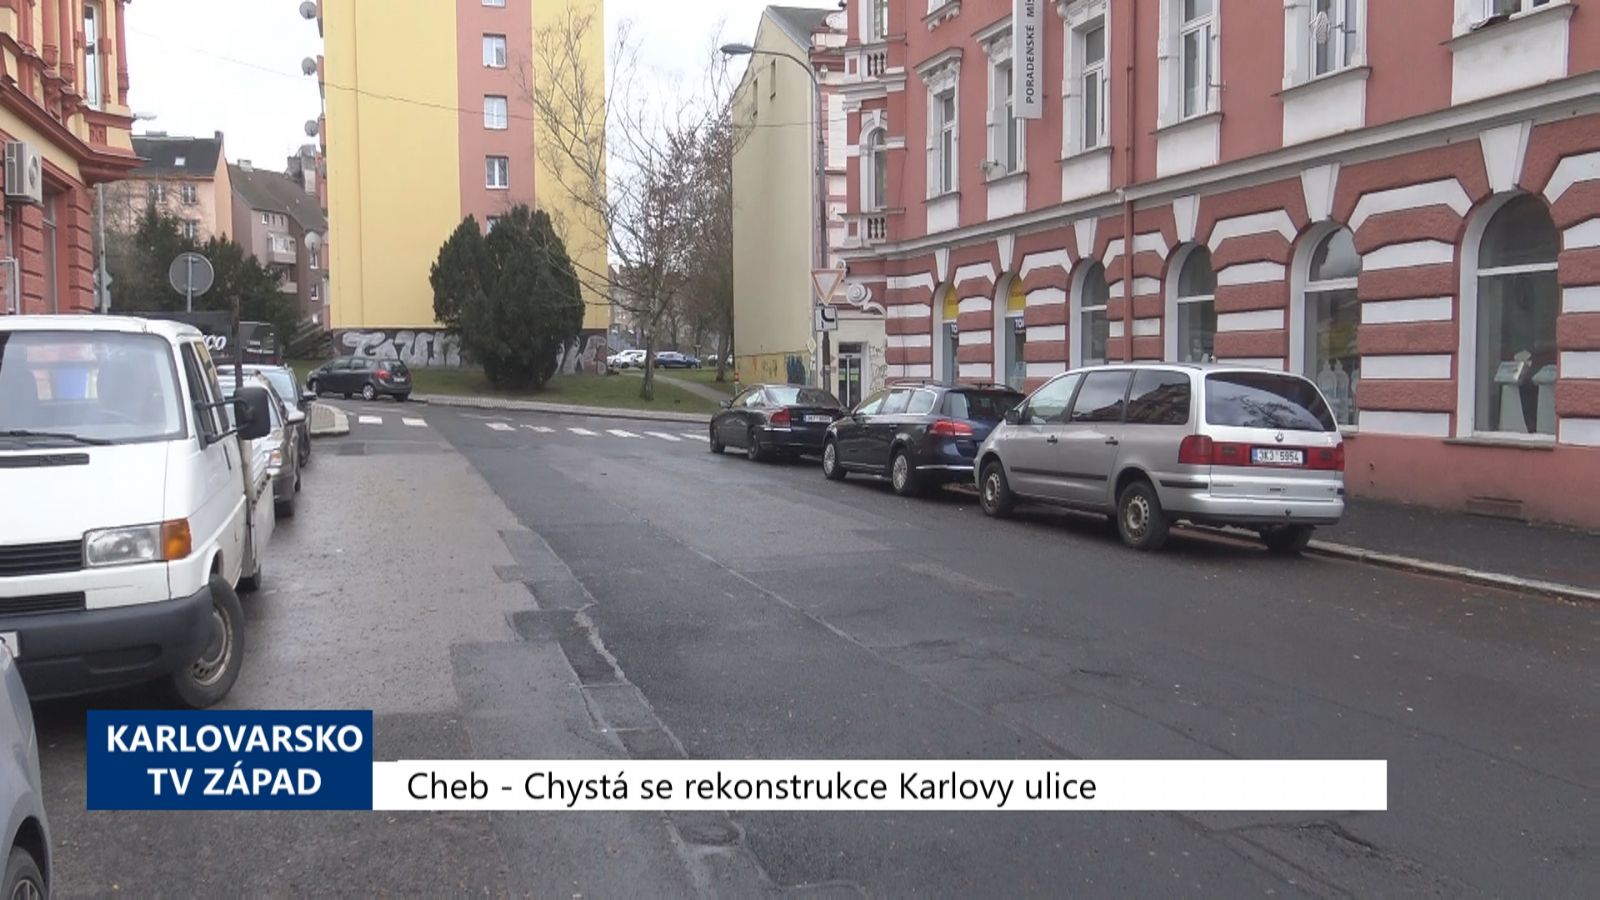 Cheb: Chystá se rekonstrukce Karlovy ulice (TV Západ)	